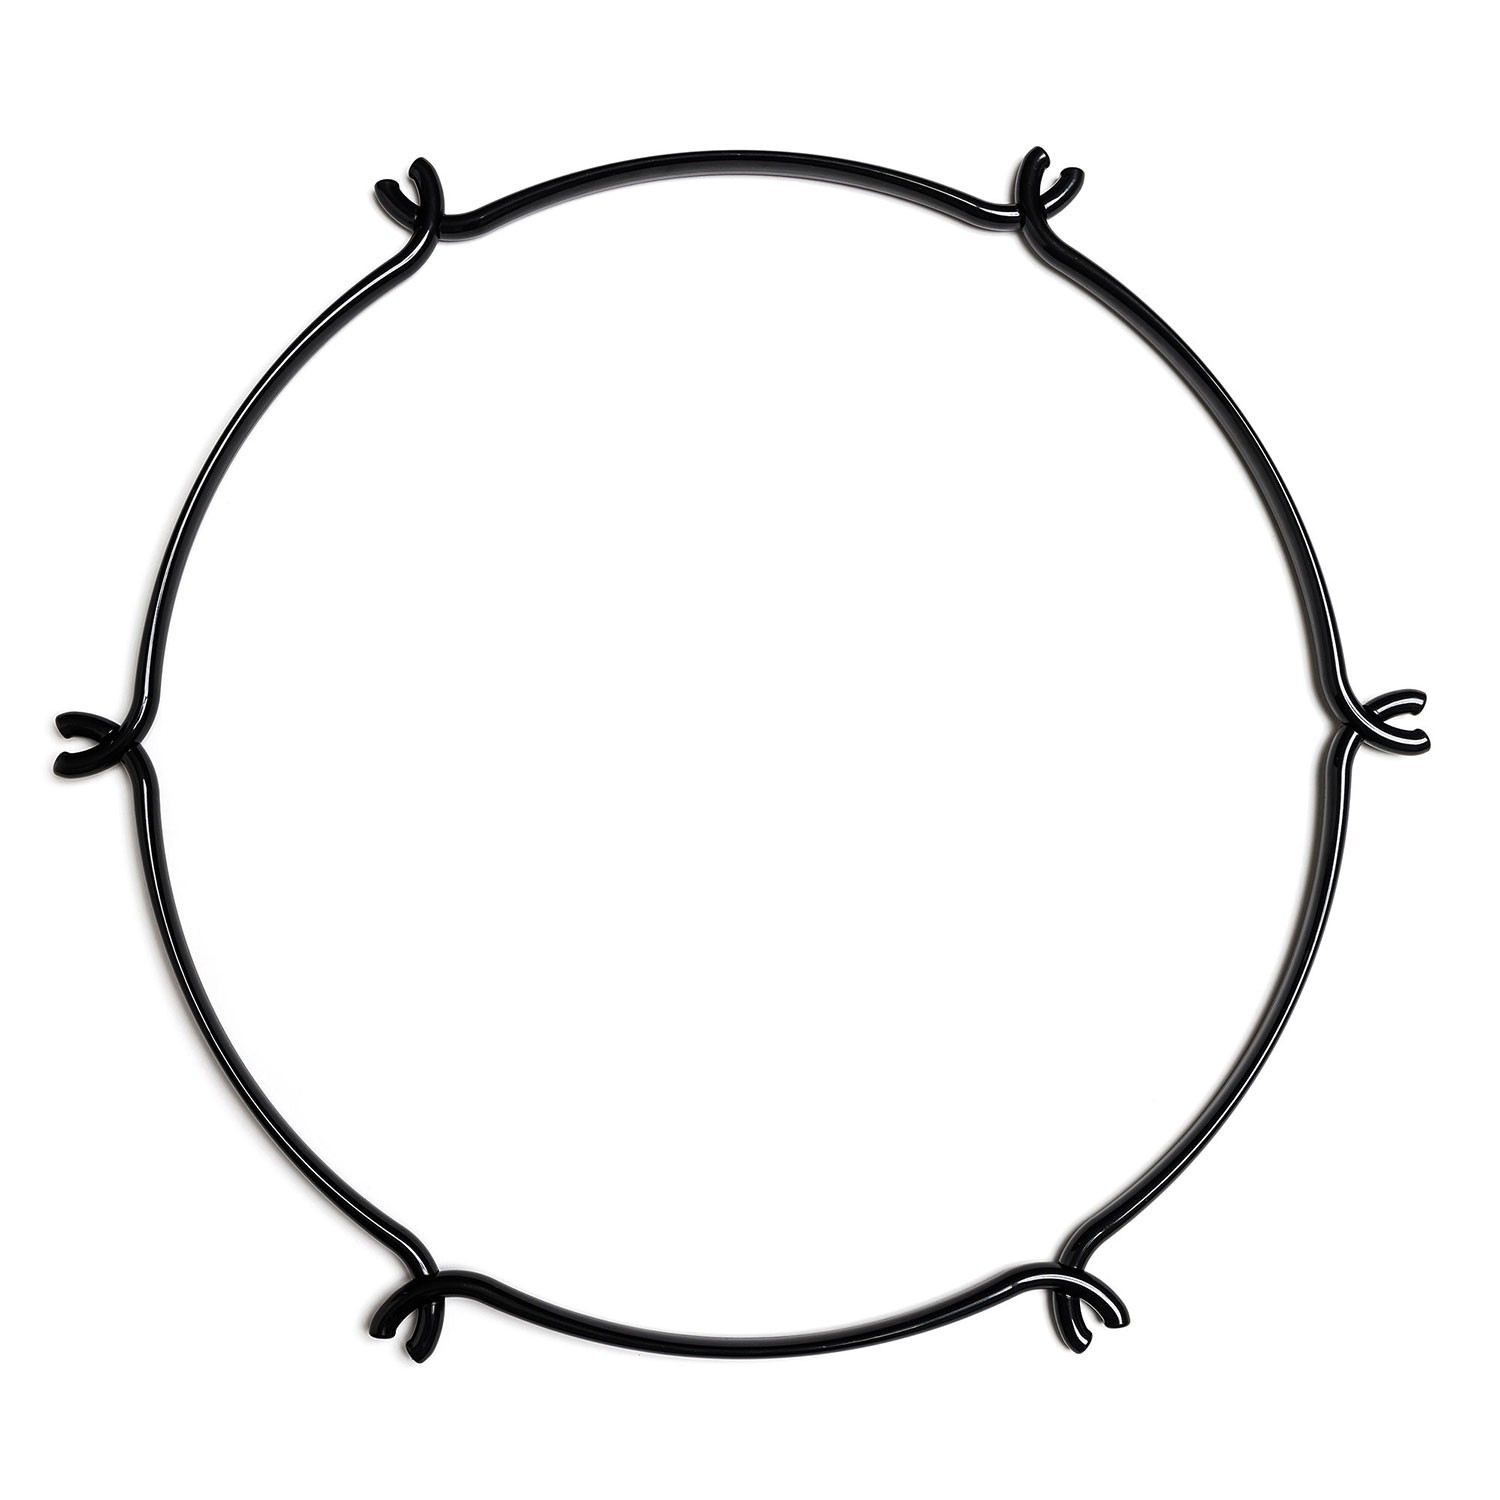 Cage Circular - Estructura para lámparas tipo araña